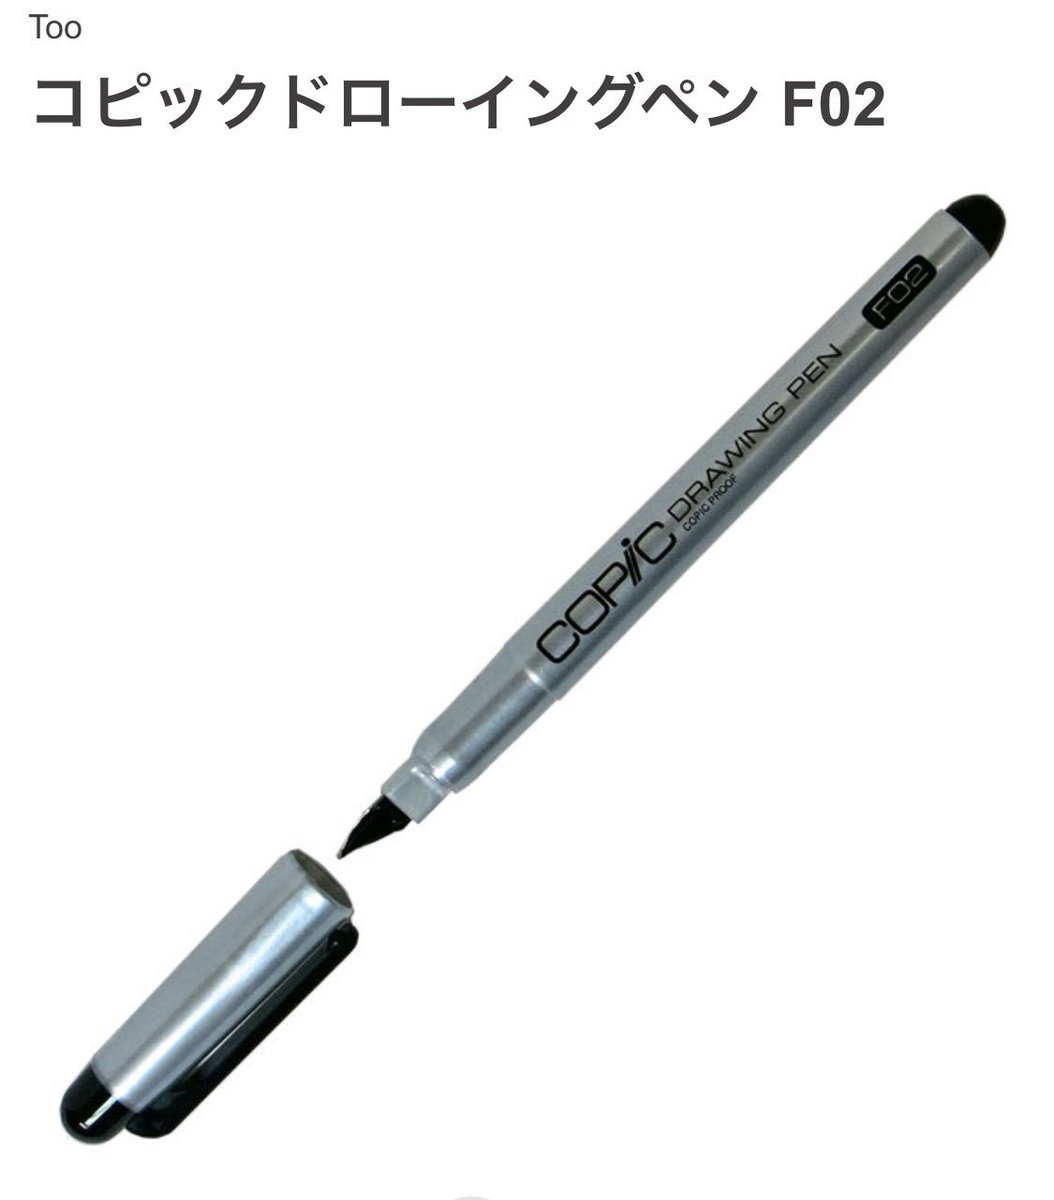 アナログ用ののペンを買ったり、浦沢さんの漫画買ったりしたよ！ 